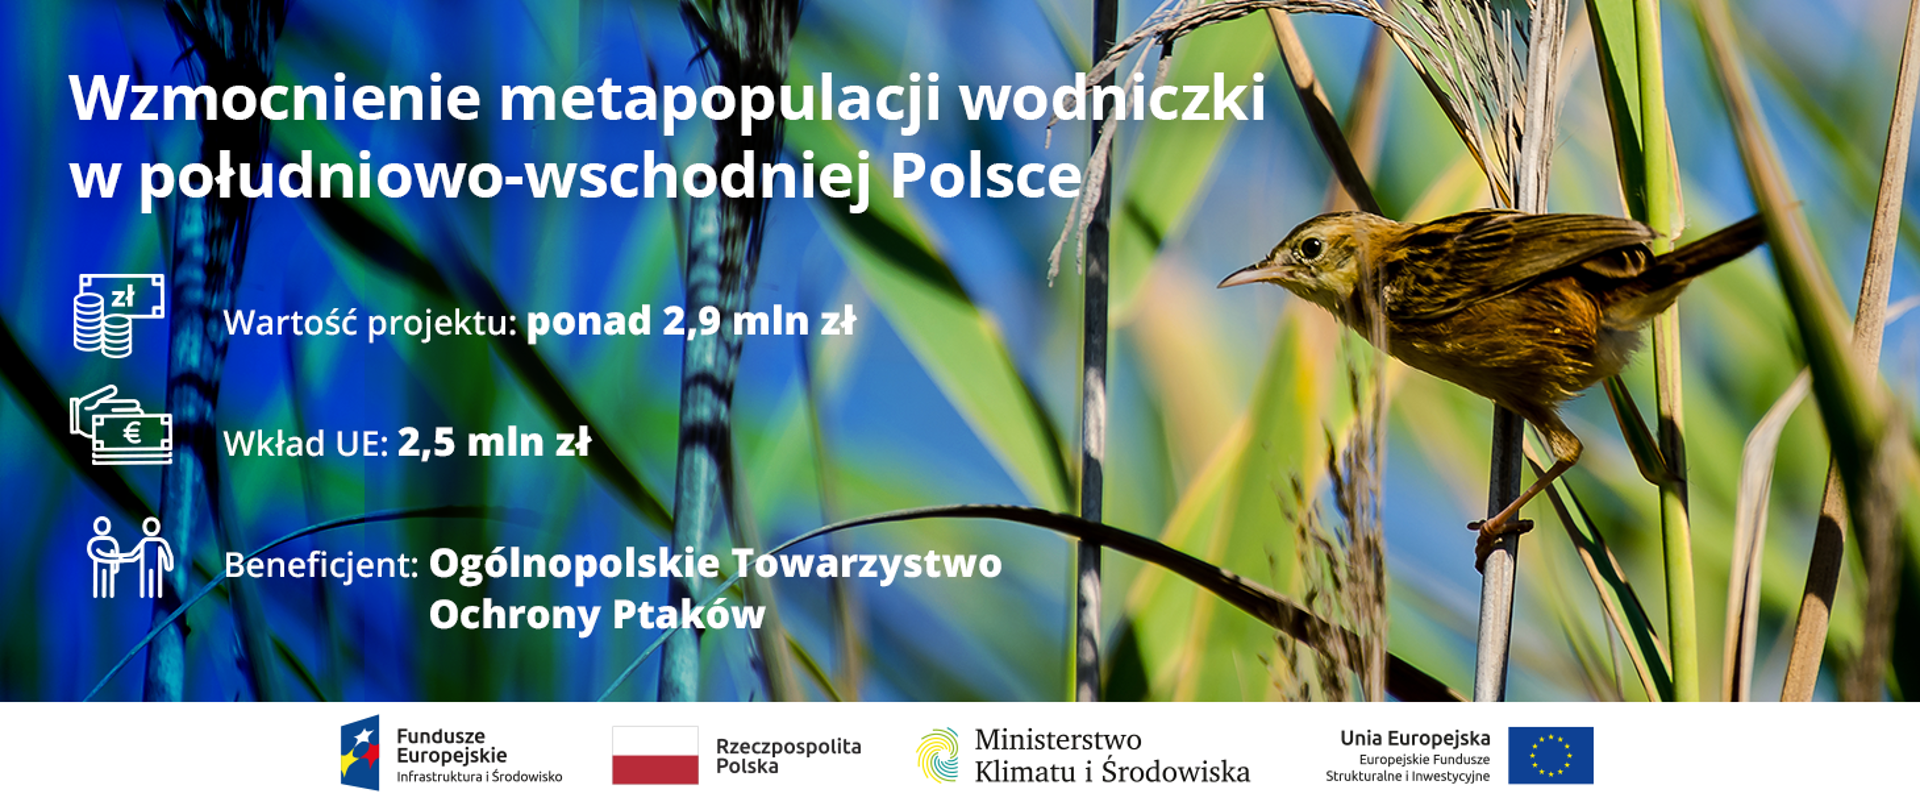 Wzmocnienie południowo-wschodniej metapopulacji wodniczki Acrocephalus paludicola w Polsce